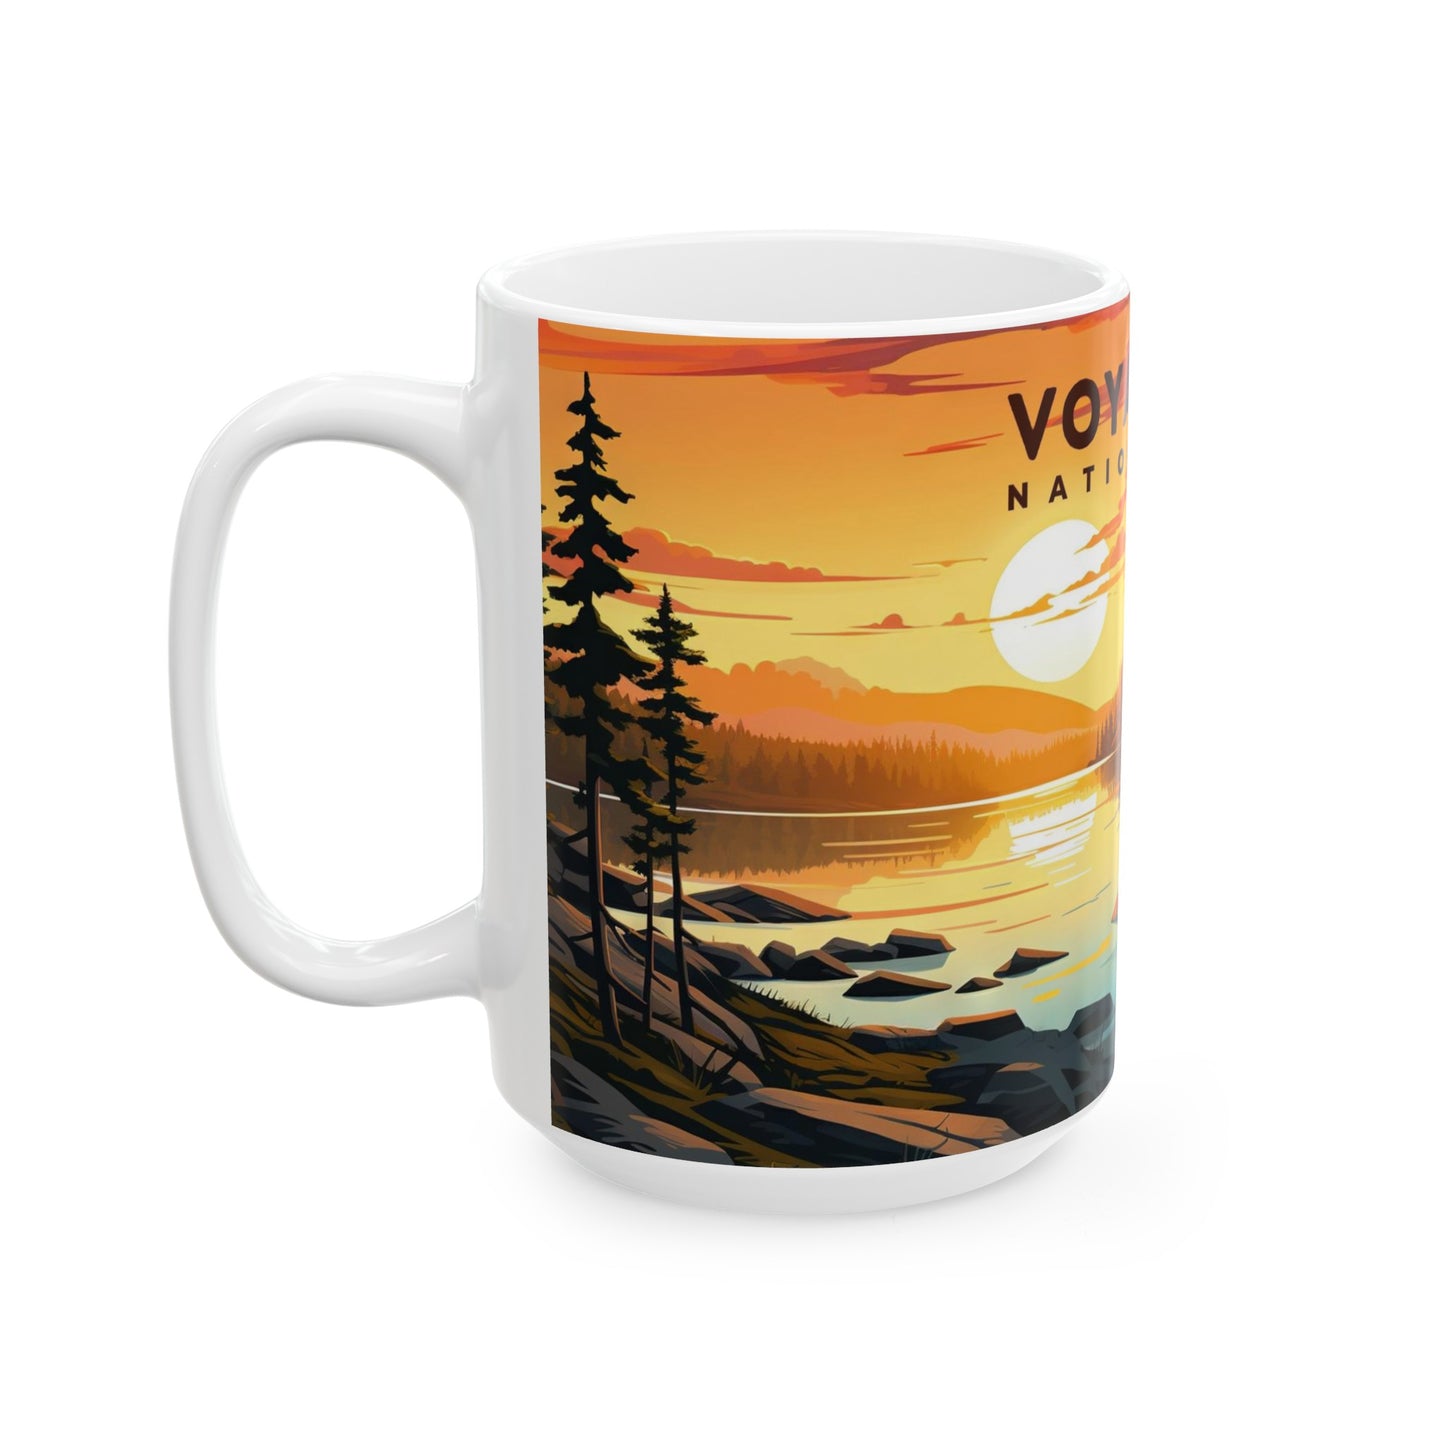 Voyageurs National Park Mug | White Ceramic Mug (11oz, 15oz)